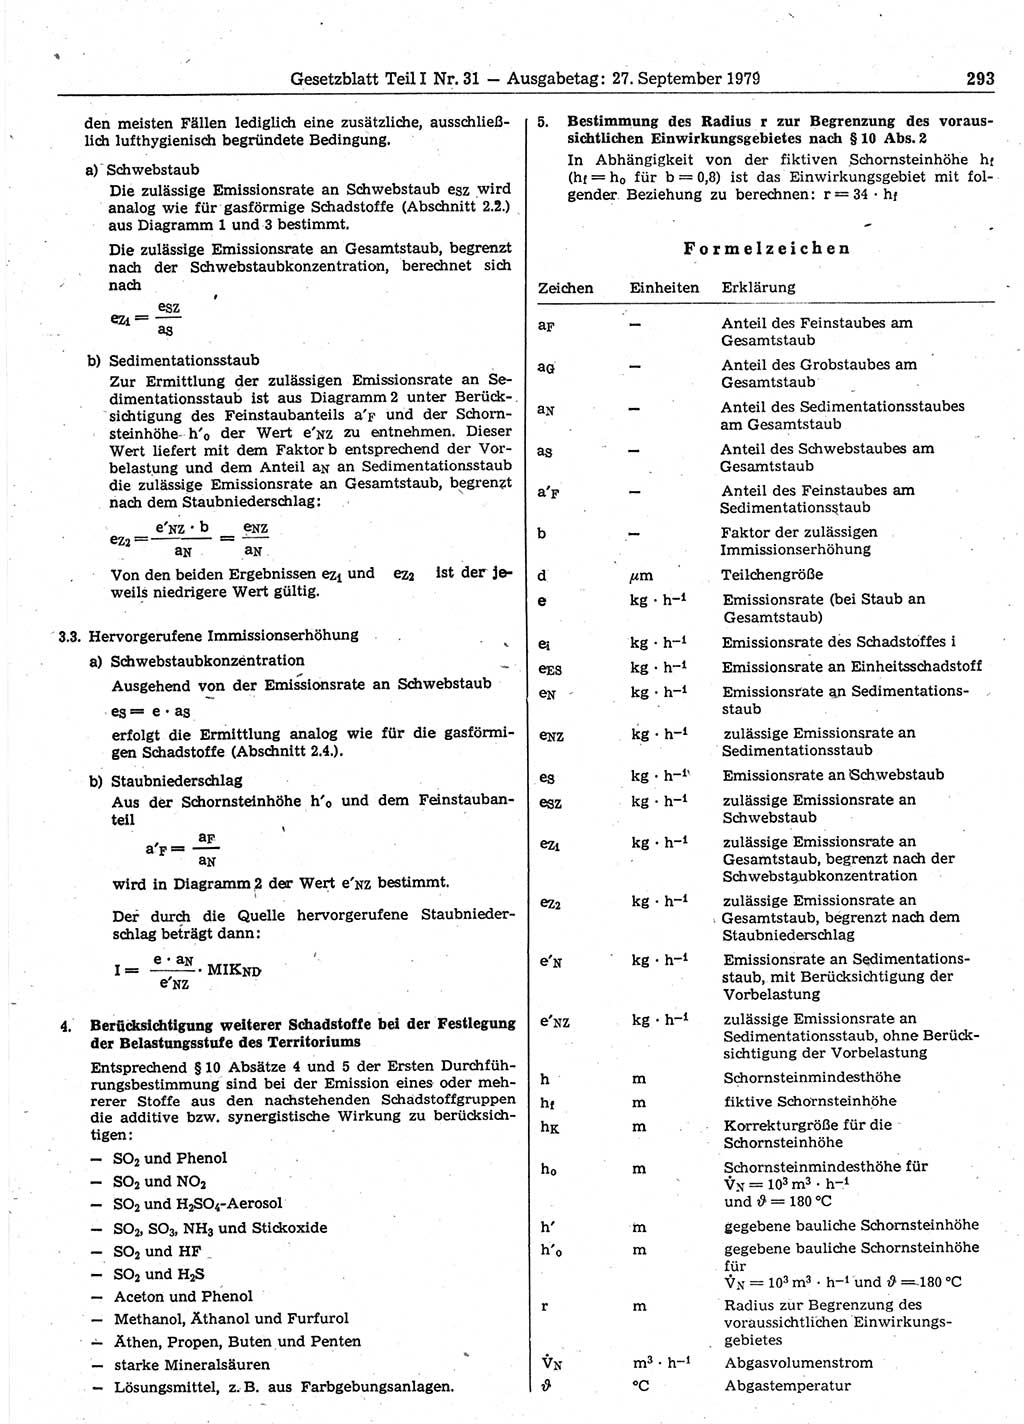 Gesetzblatt (GBl.) der Deutschen Demokratischen Republik (DDR) Teil Ⅰ 1979, Seite 293 (GBl. DDR Ⅰ 1979, S. 293)